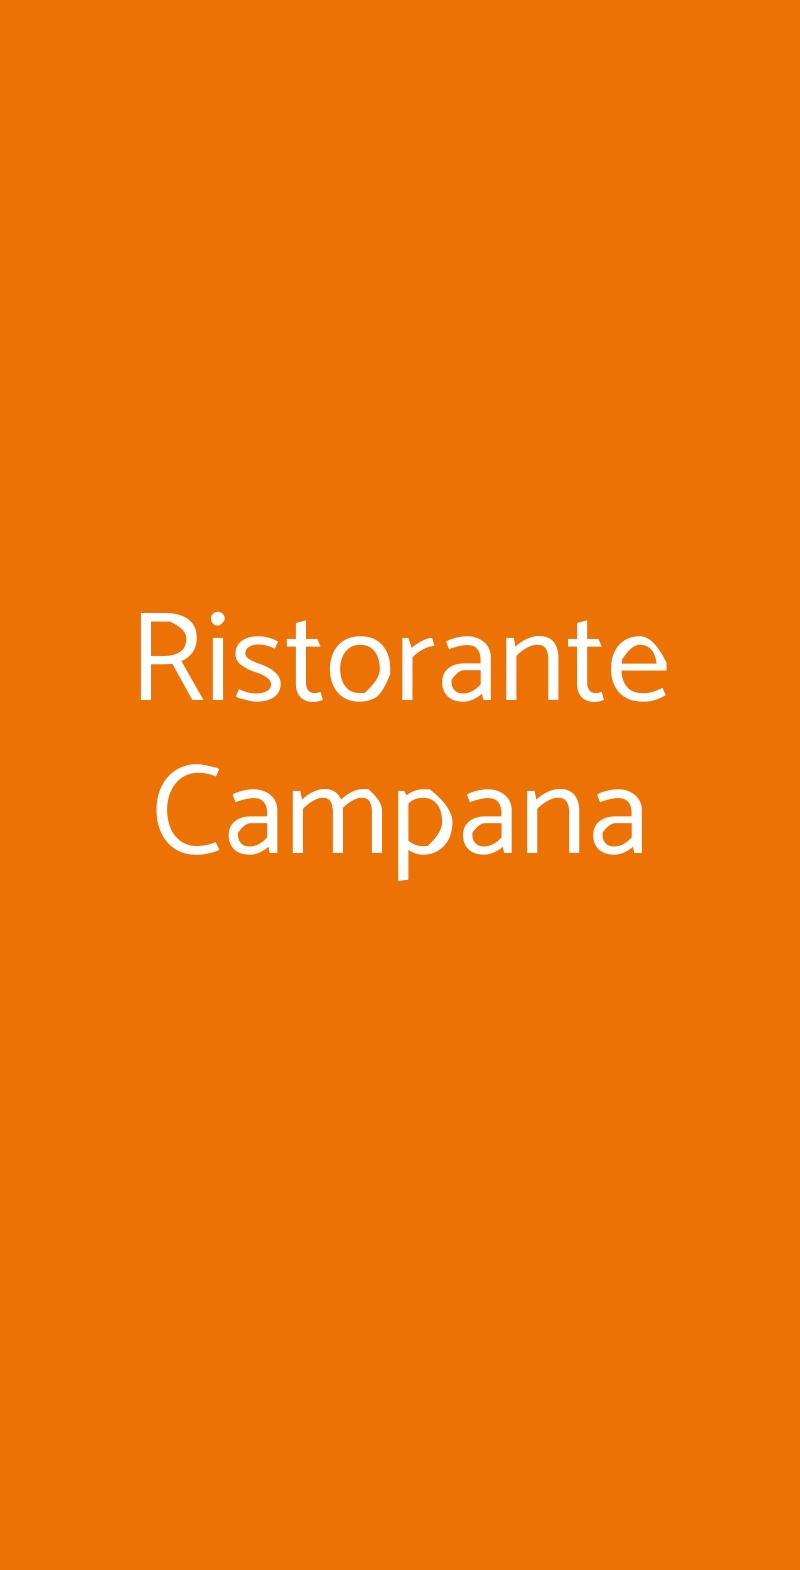 Ristorante Campana La Cassa menù 1 pagina